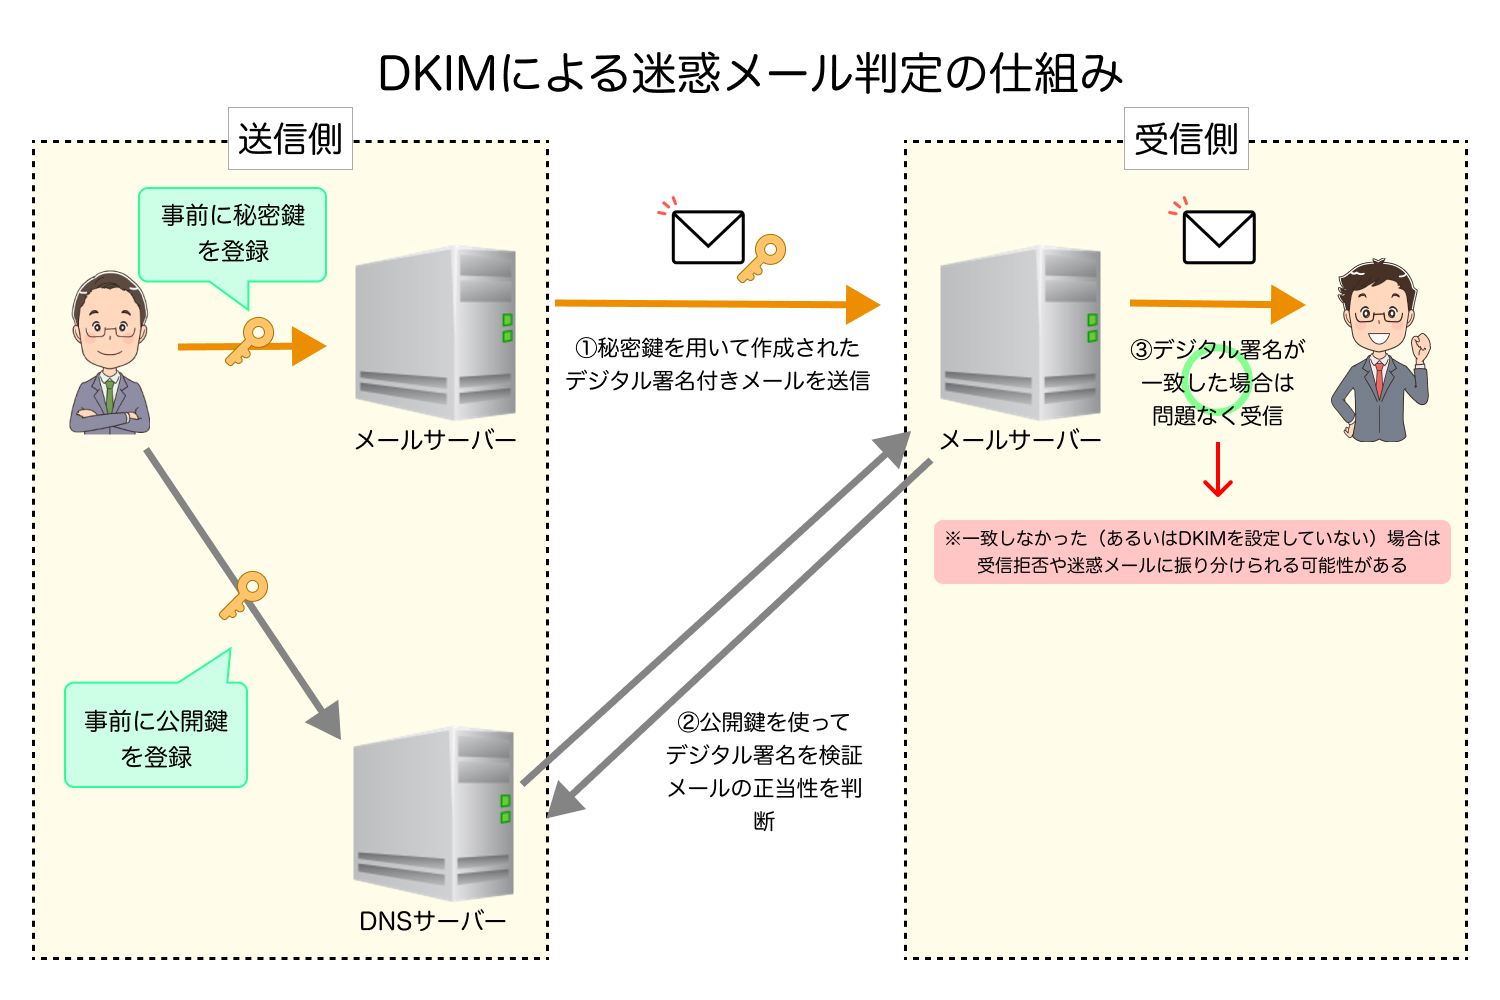 DKIMによる迷惑メール判定の仕組み